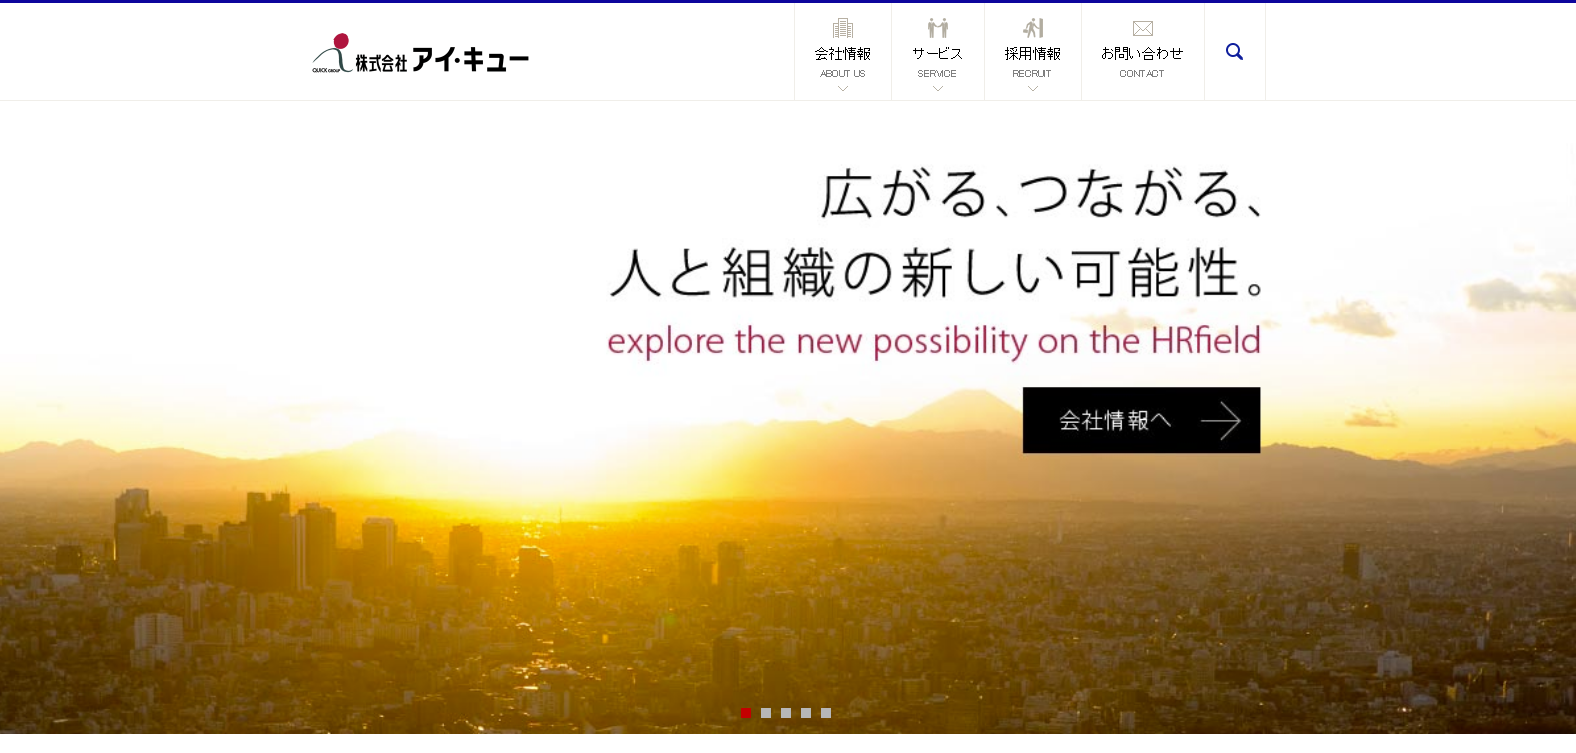 「日本の人事部」のアイ・キュー、社名を「株式会社HRビジョン」に変更